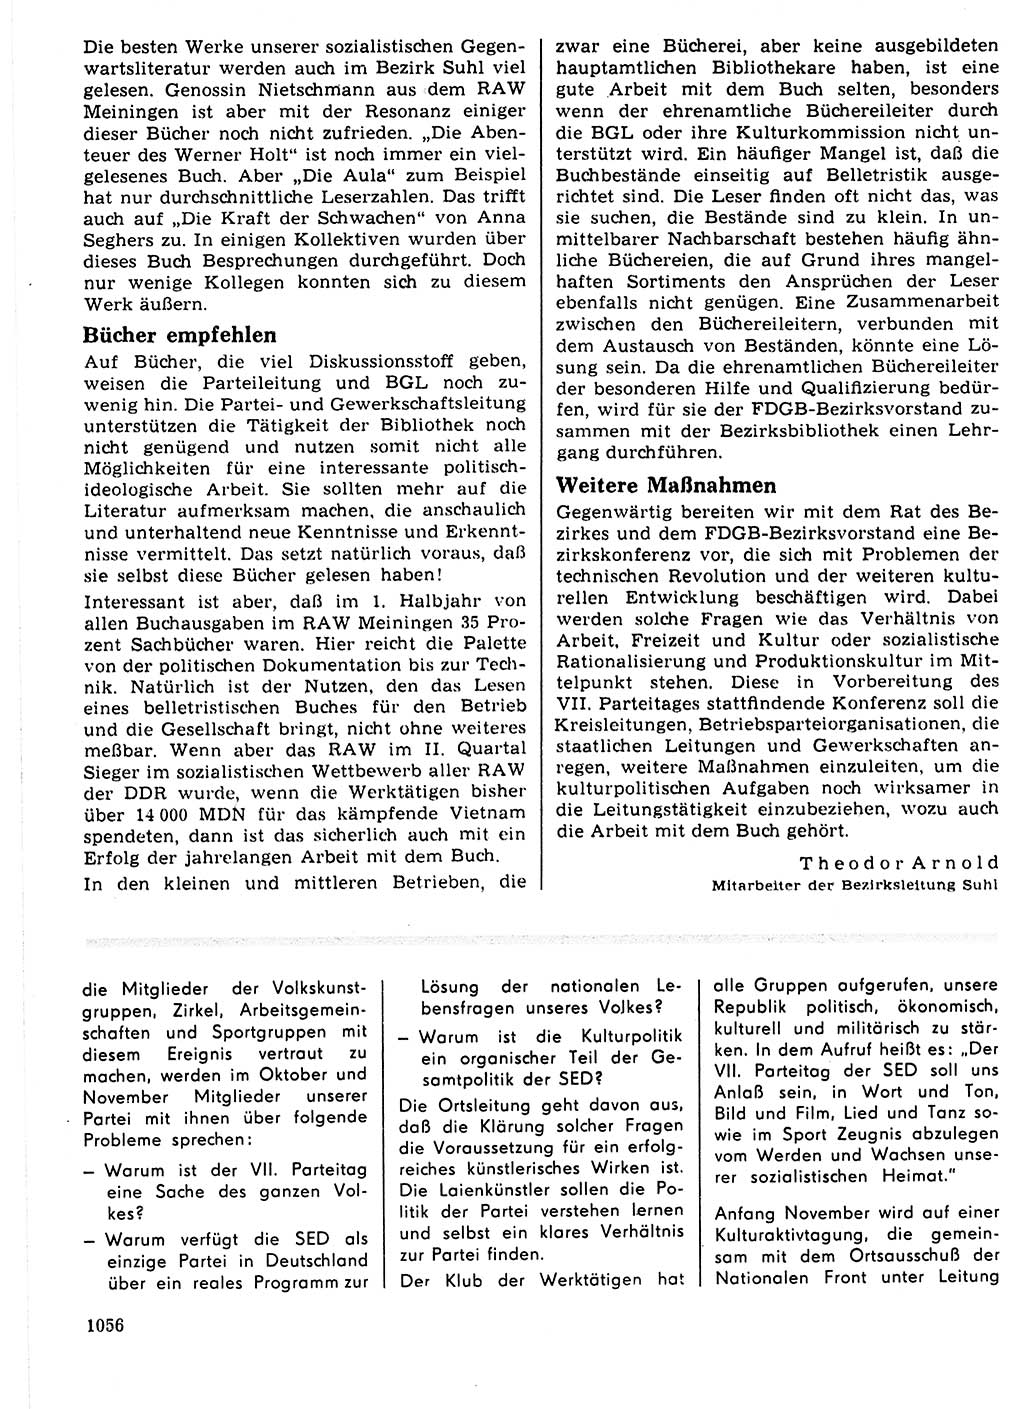 Neuer Weg (NW), Organ des Zentralkomitees (ZK) der SED (Sozialistische Einheitspartei Deutschlands) für Fragen des Parteilebens, 21. Jahrgang [Deutsche Demokratische Republik (DDR)] 1966, Seite 1056 (NW ZK SED DDR 1966, S. 1056)